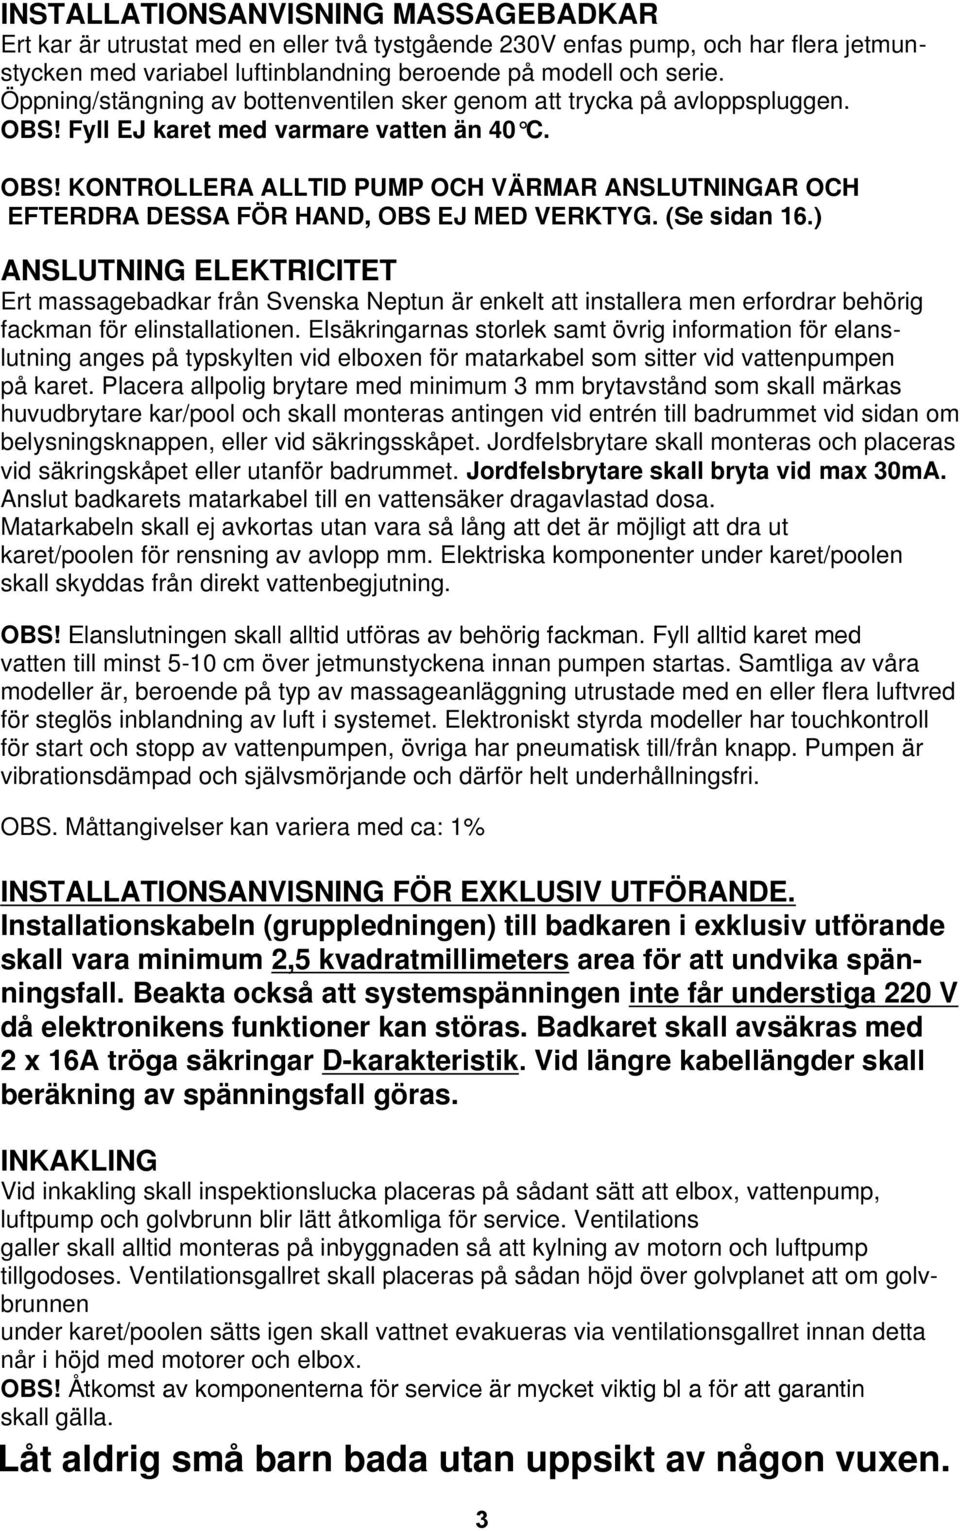 (Se sidan 16.) ANSLUTNING ELEKTRICITET Ert massagebadkar från Svenska Neptun är enkelt att installera men erfordrar behörig fackman för elinstallationen.